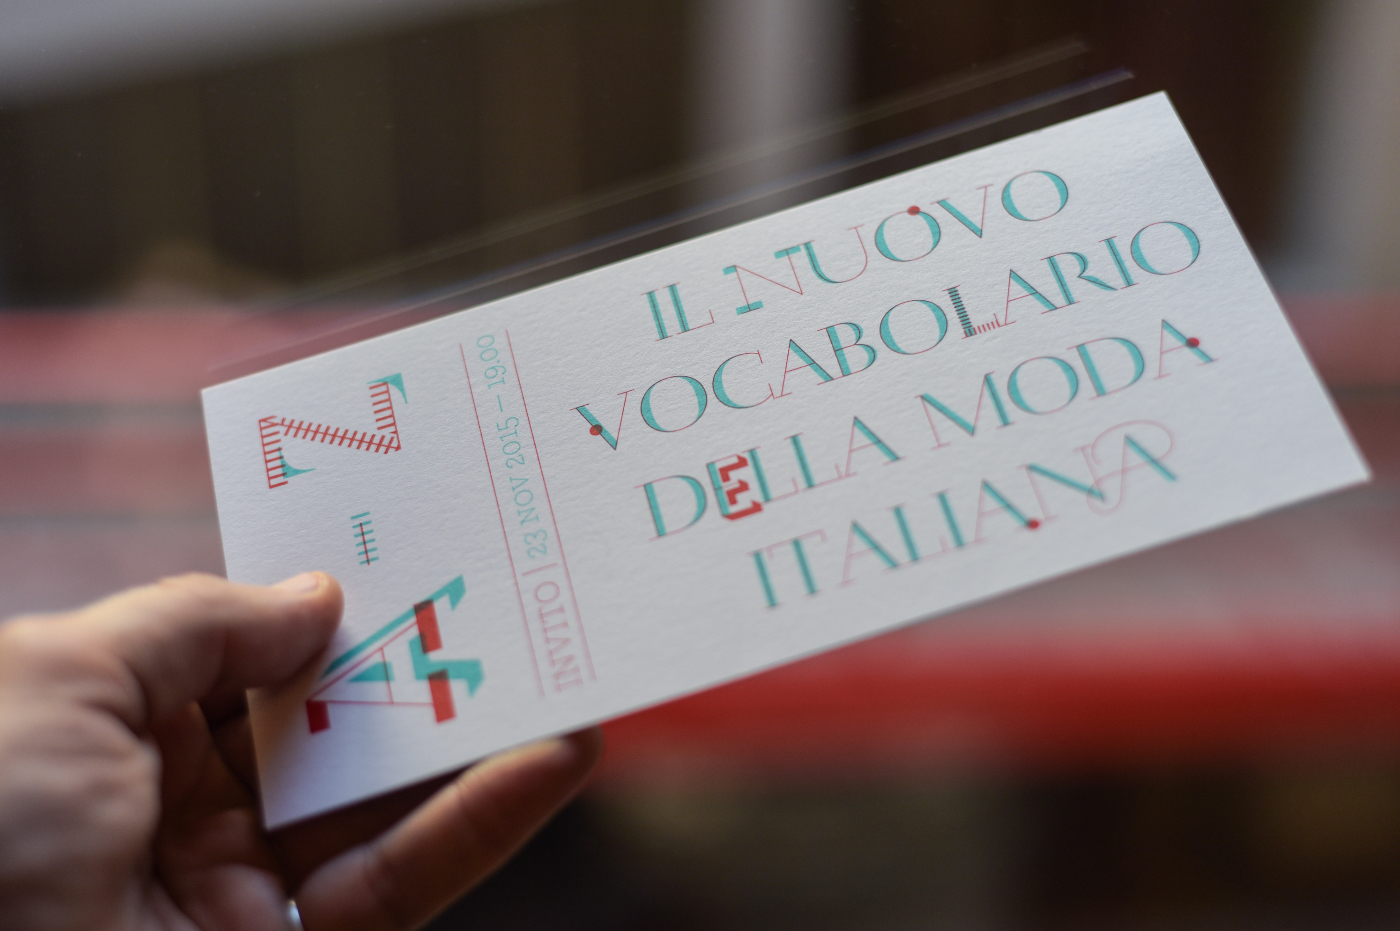 Il Nuovo Vocabolario della Moda Italiana by Zetalab - Creative Work - $i